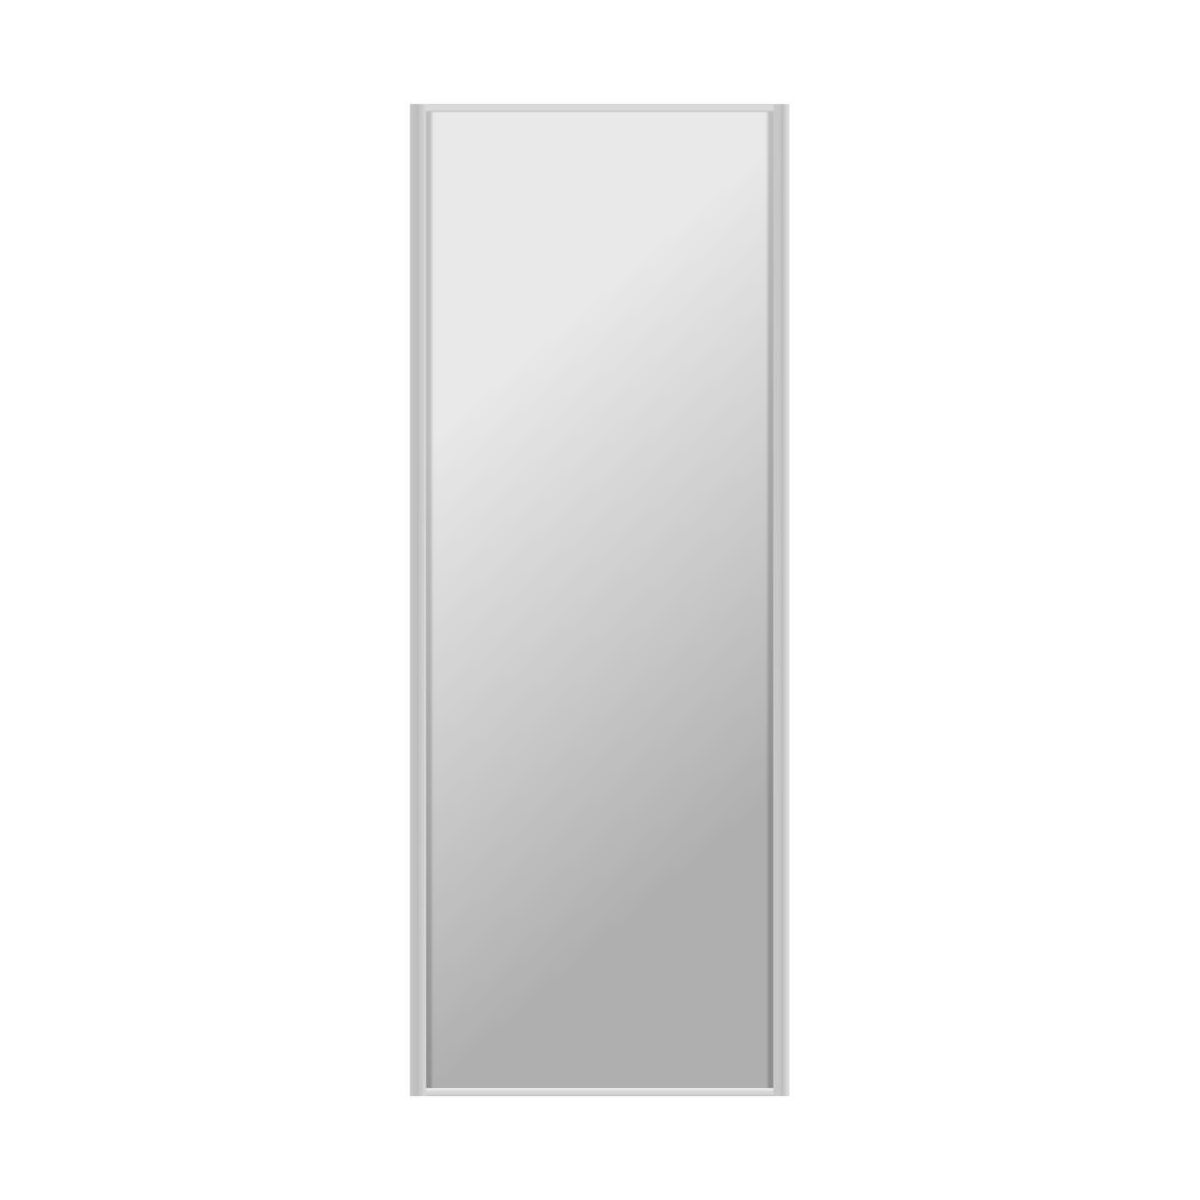 Drzwi przesuwne do szafy 67 cm z lustrem rama srebrna Spaceo